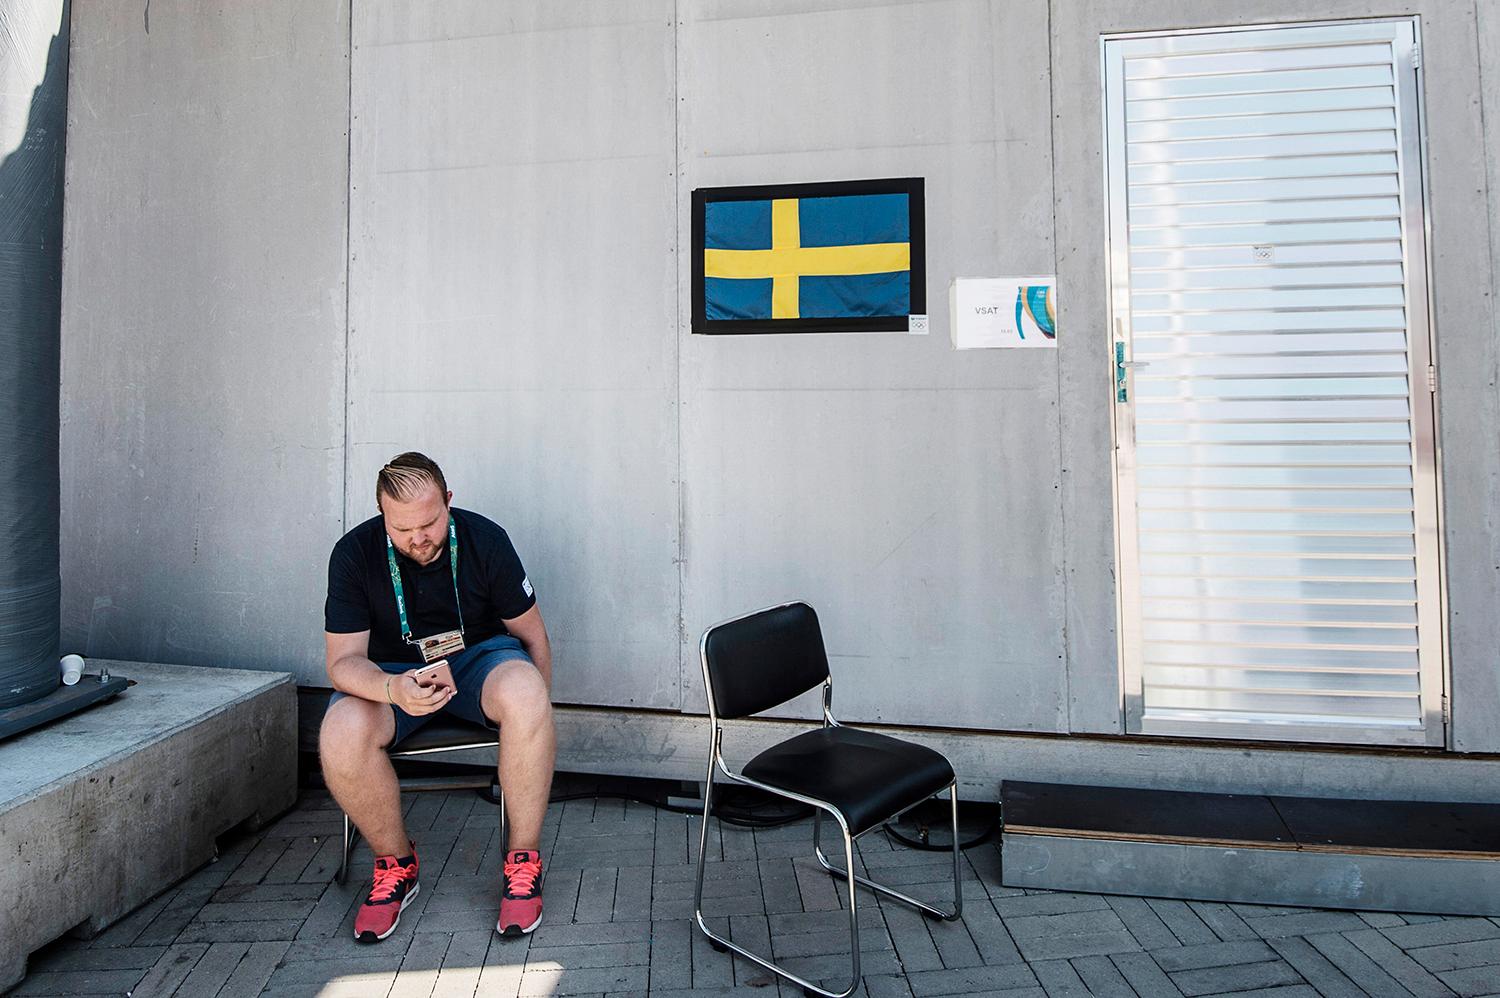 Reportern Olle Nyström pustar ut i skuggan. Han älskar OS.
– Man får uppleva saker man inte upplever till vardags. Segling, till exempel, som jag varit ute mycket på nu. Fantastiskt, säger han. FOTO: PONTUS ORRE